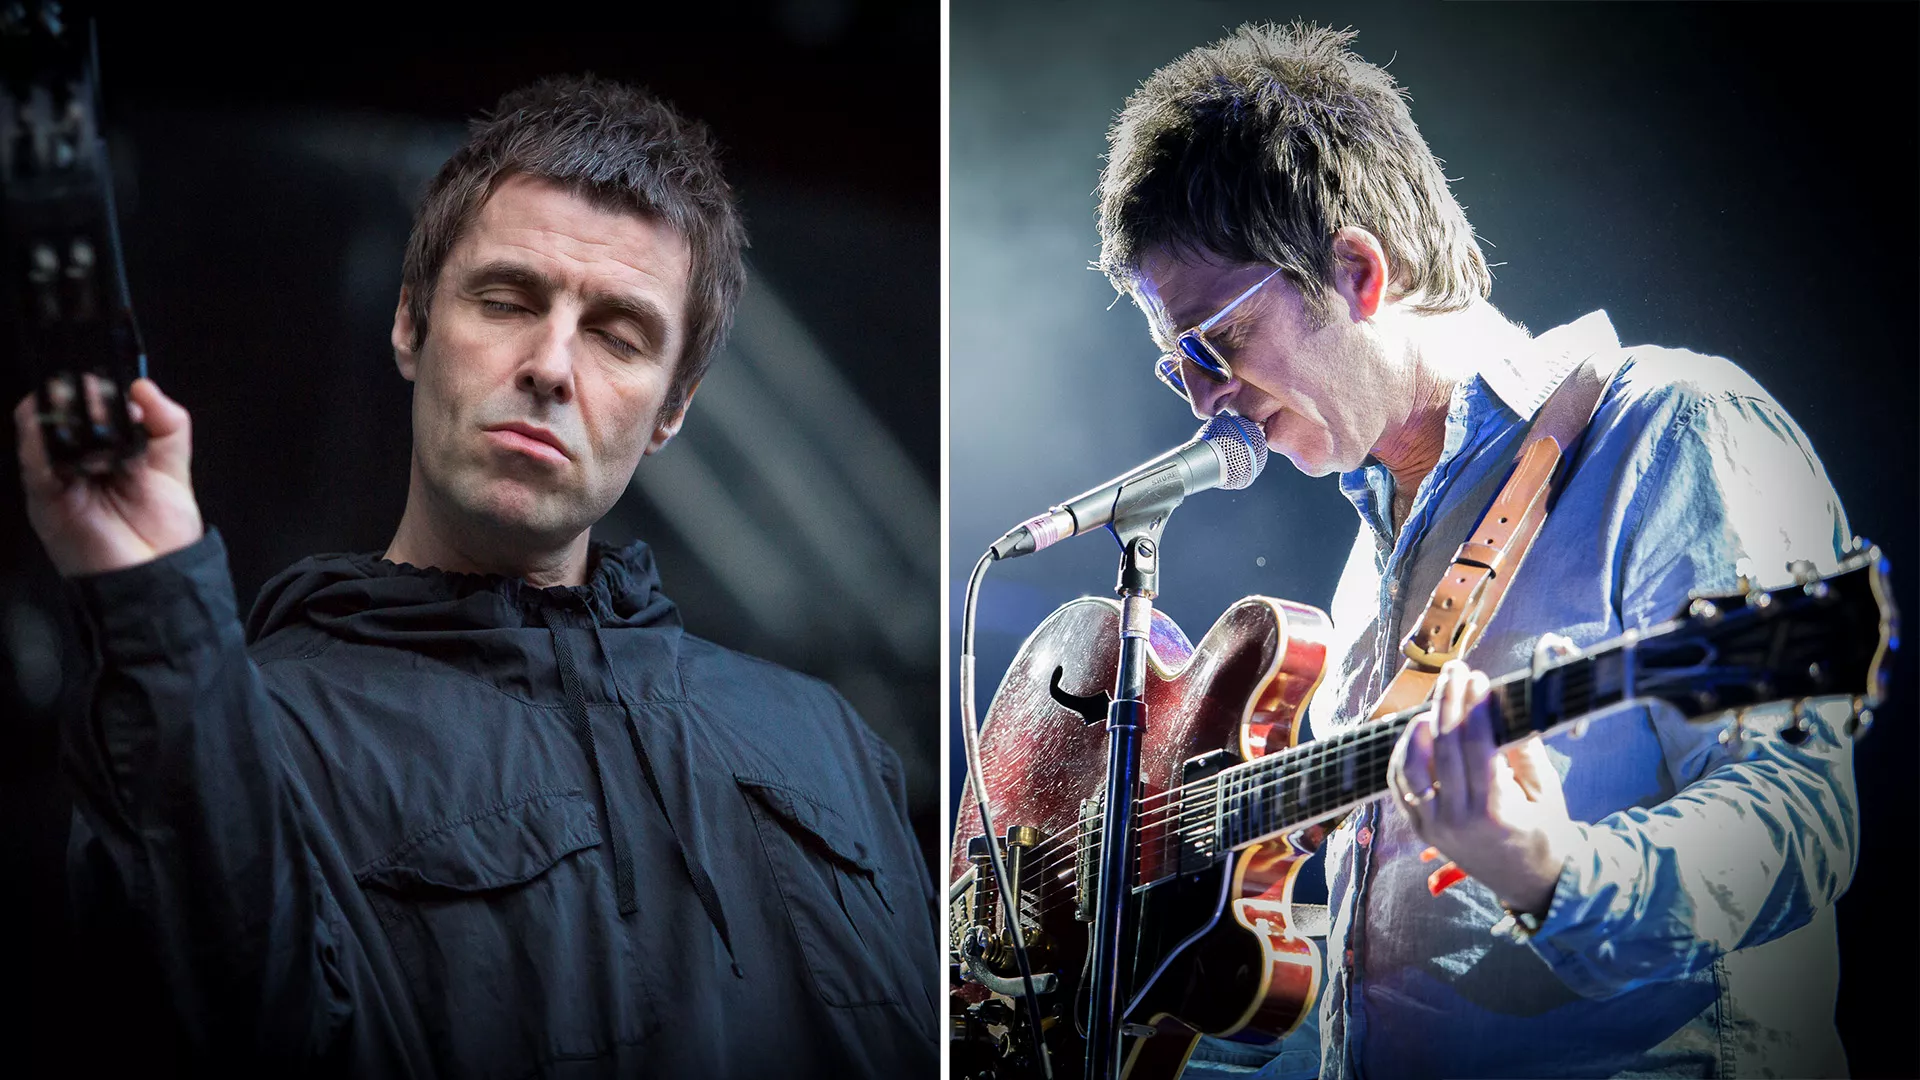 Liam på ti-årsdagen for Oasis-opløsning: "Noel burde skamme sig"